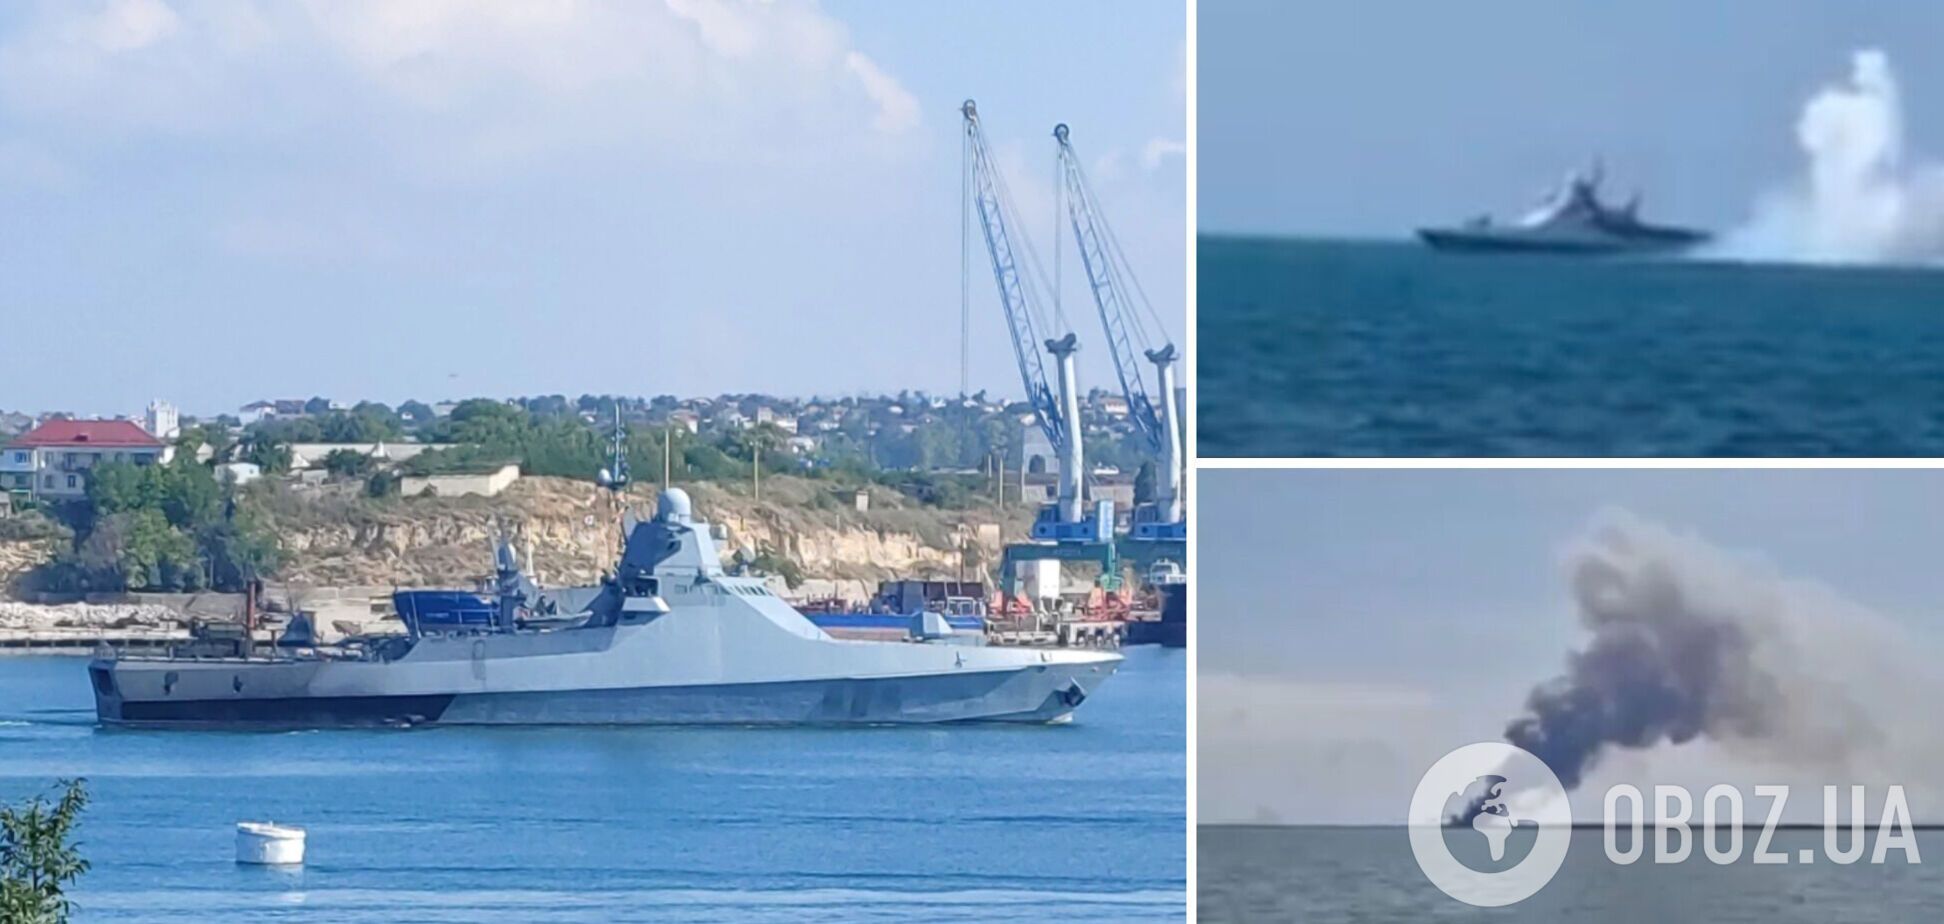 В бухту Севастополя вошел российский военный корабль с обожженным бортом: видео с его горением появилось в сети накануне